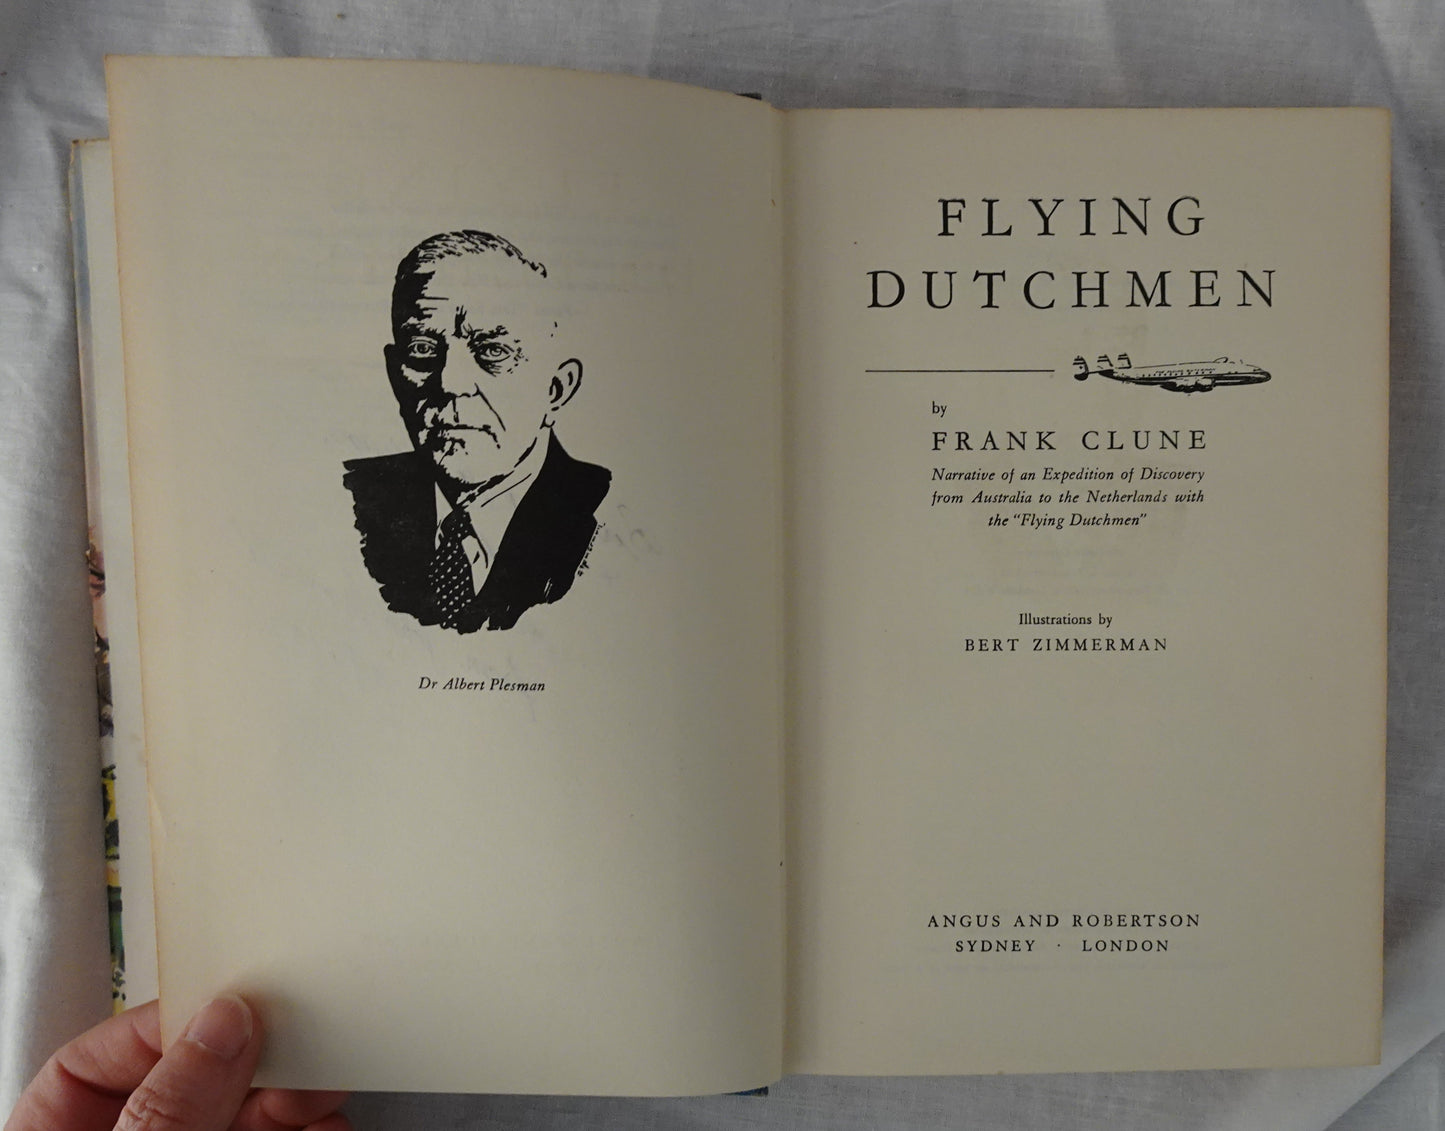 Flying Dutchmen by Frank Clune